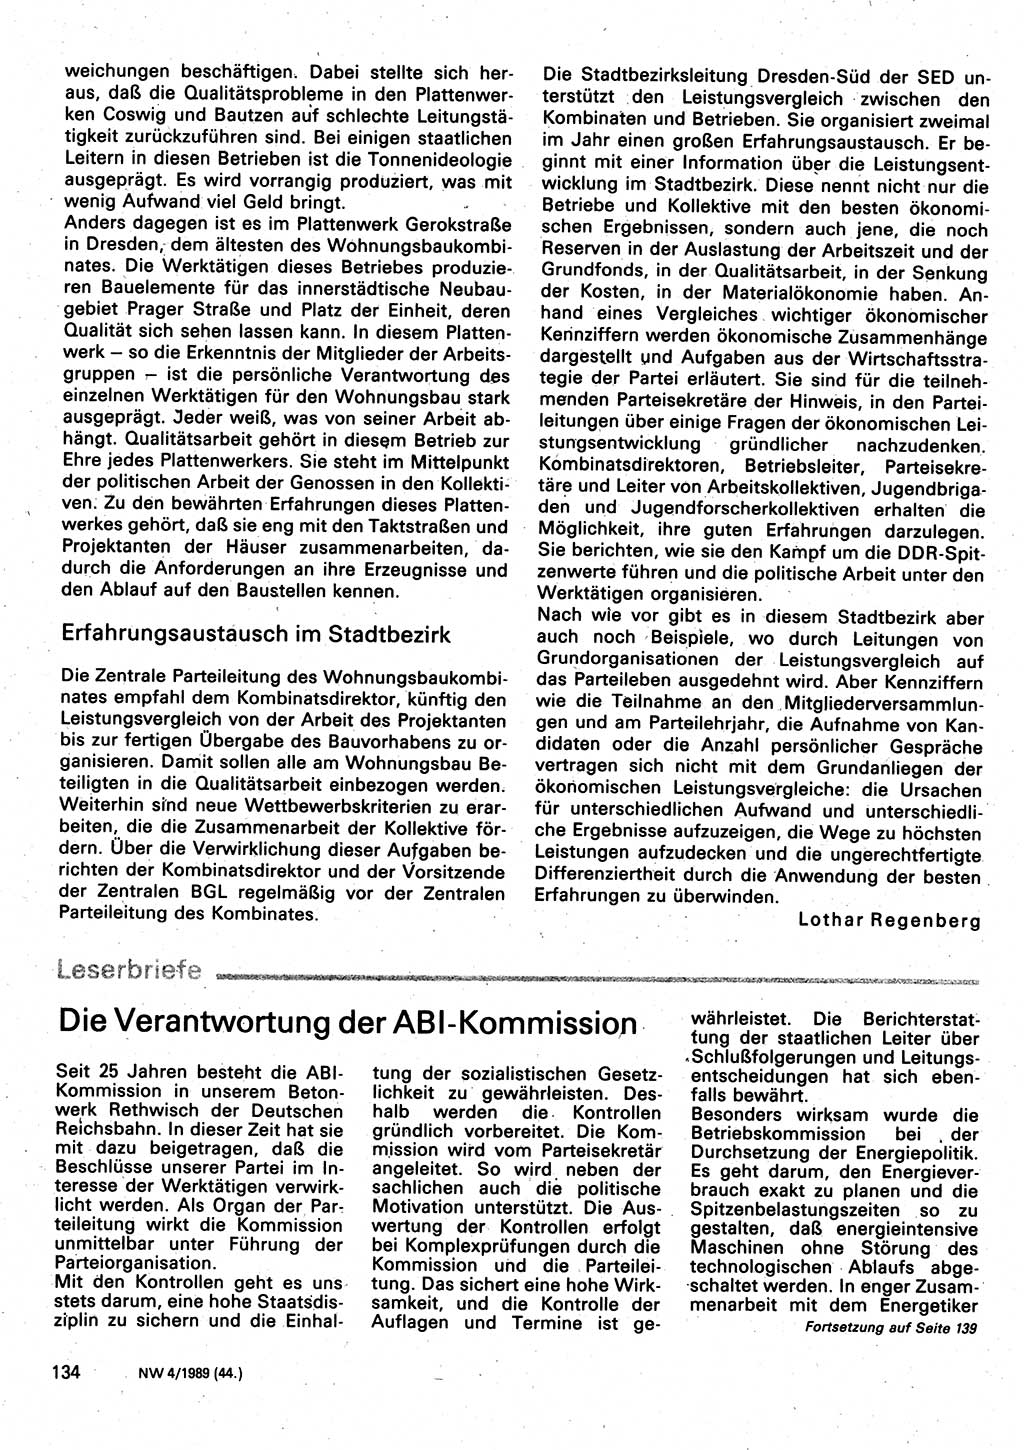 Neuer Weg (NW), Organ des Zentralkomitees (ZK) der SED (Sozialistische Einheitspartei Deutschlands) für Fragen des Parteilebens, 44. Jahrgang [Deutsche Demokratische Republik (DDR)] 1989, Seite 134 (NW ZK SED DDR 1989, S. 134)